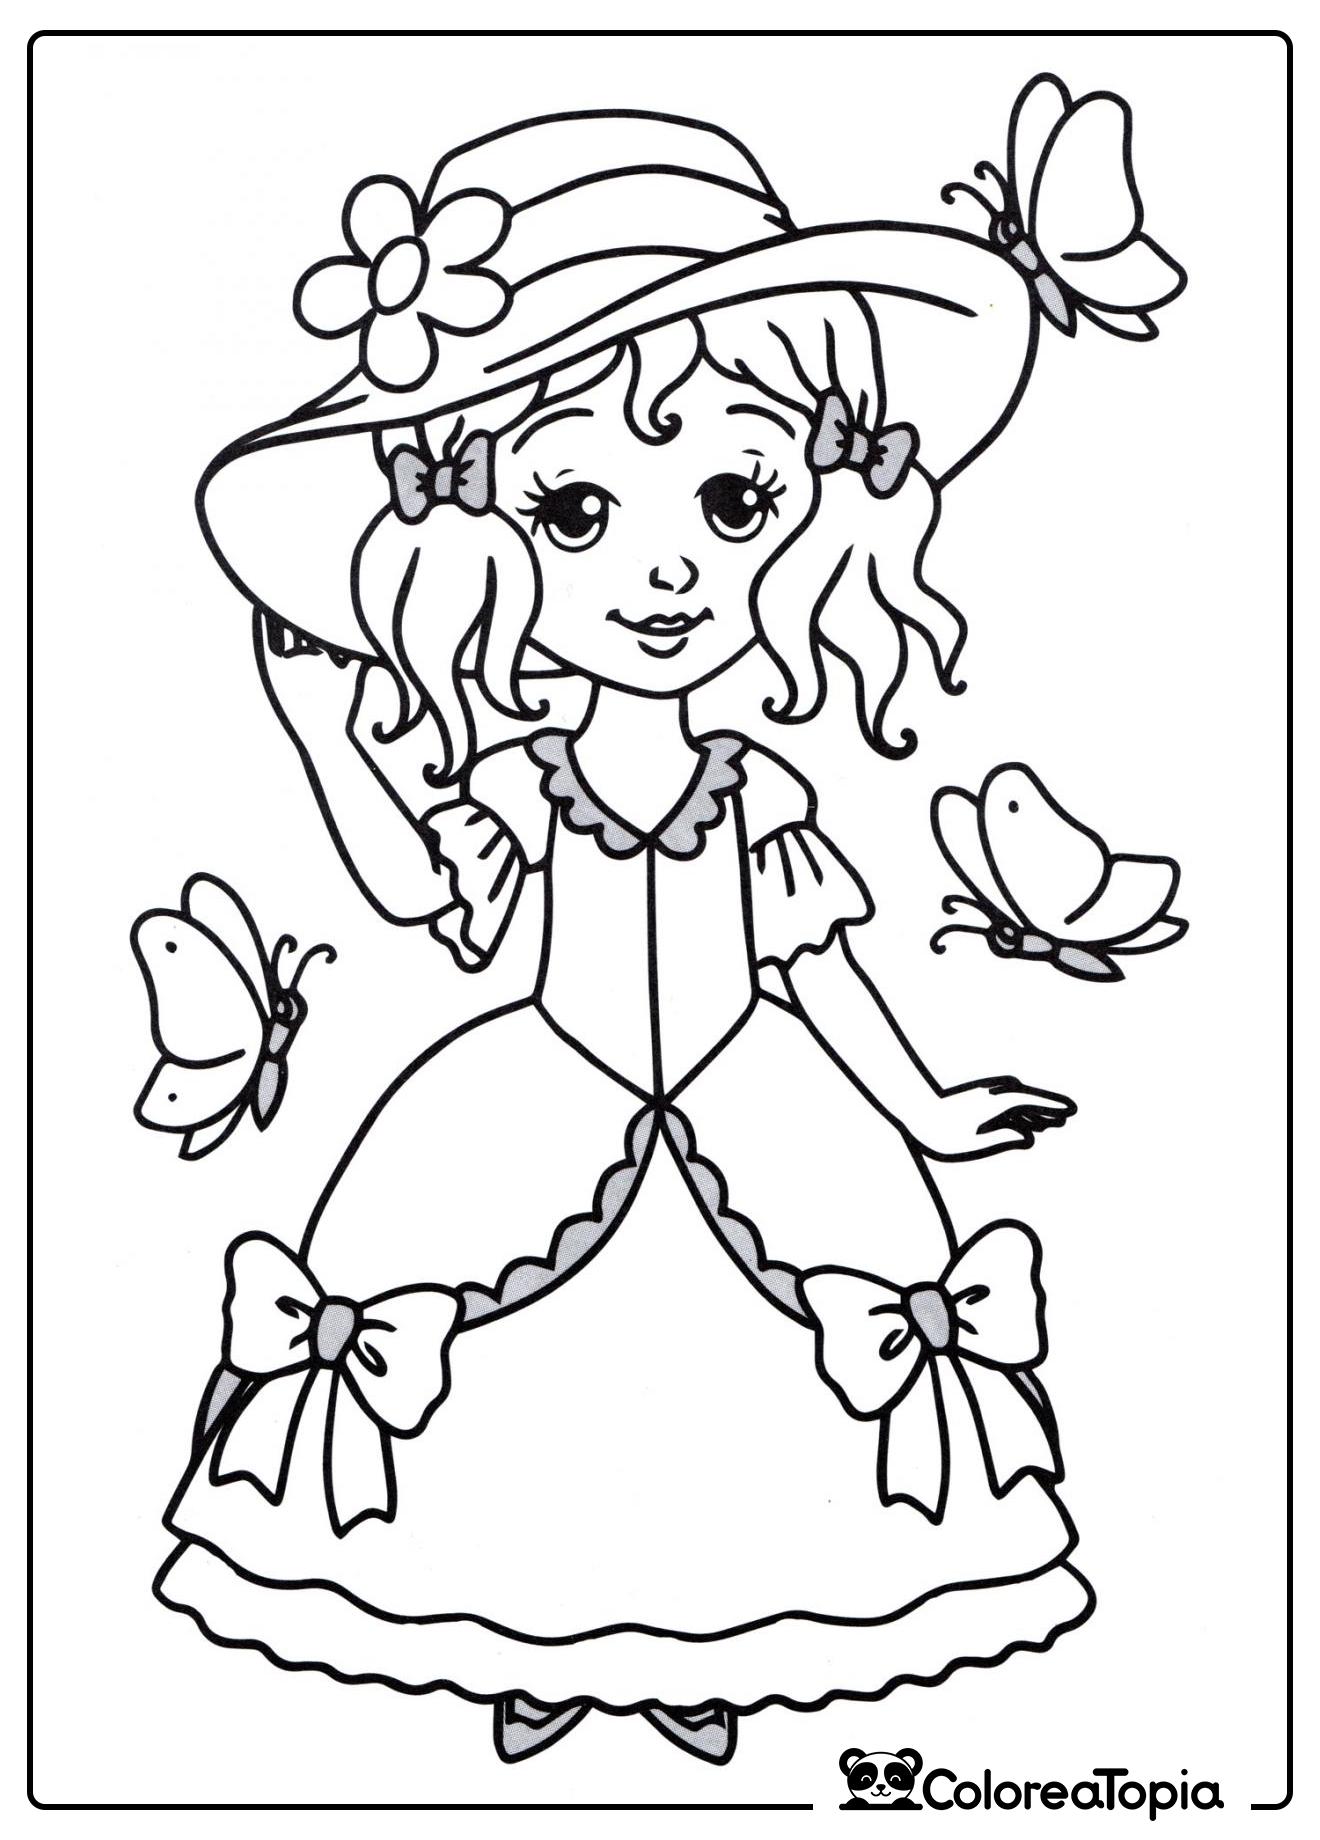 Princesa con sombrero - dibujo para colorear